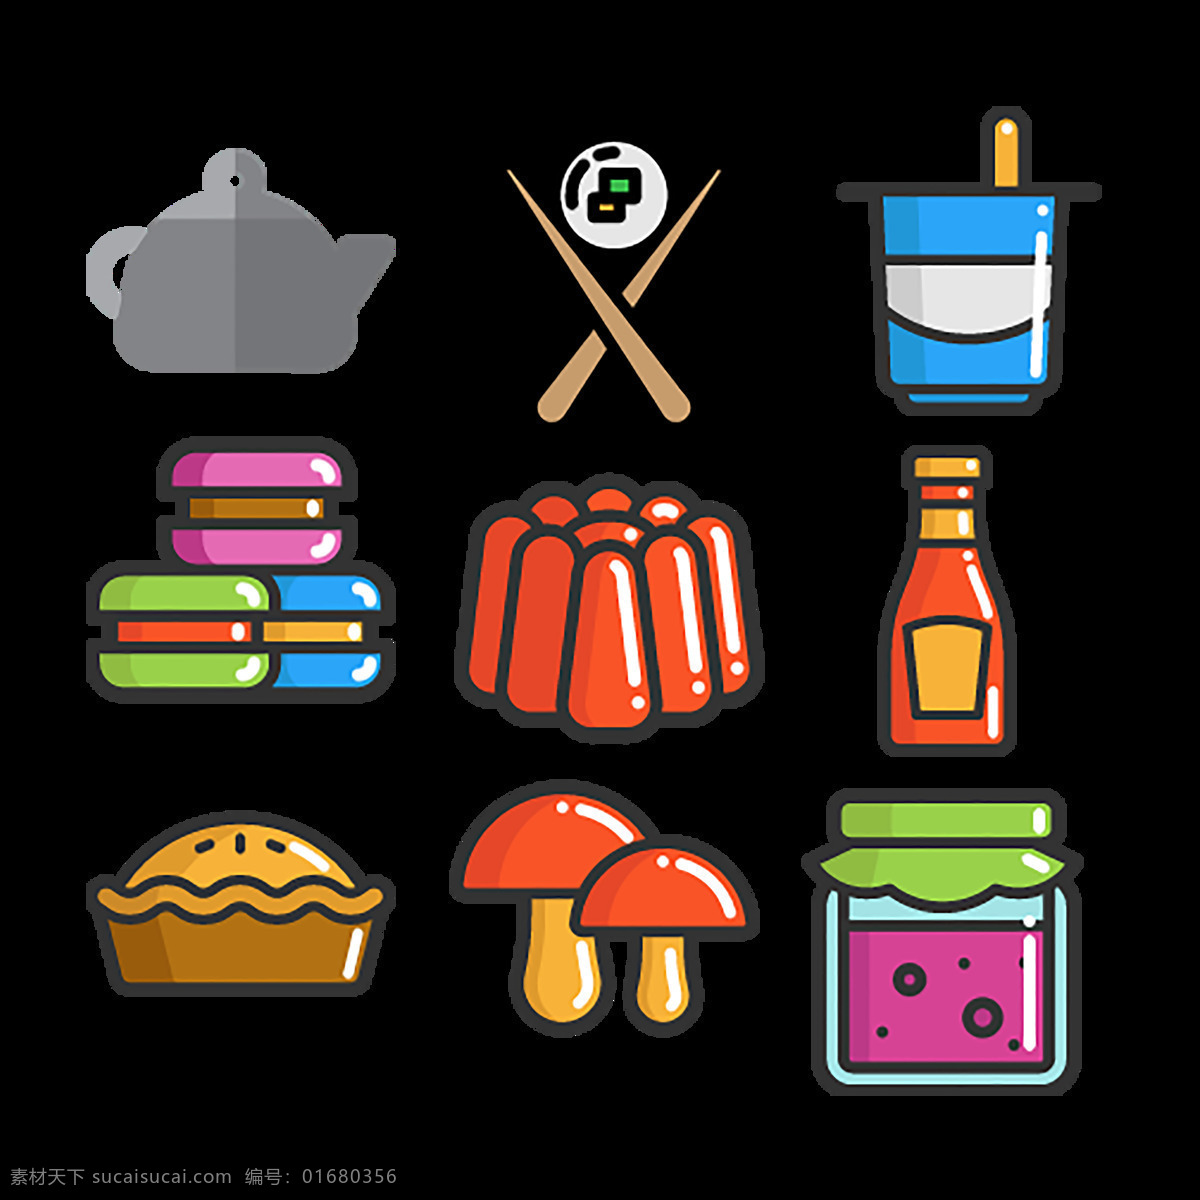 食物 食品 icon 图标 标志 图标设计 图标下载 网页图标 创意图标 汉堡 奶油 蛋糕 糖 薯条 牛奶 热狗 披萨 奶酪